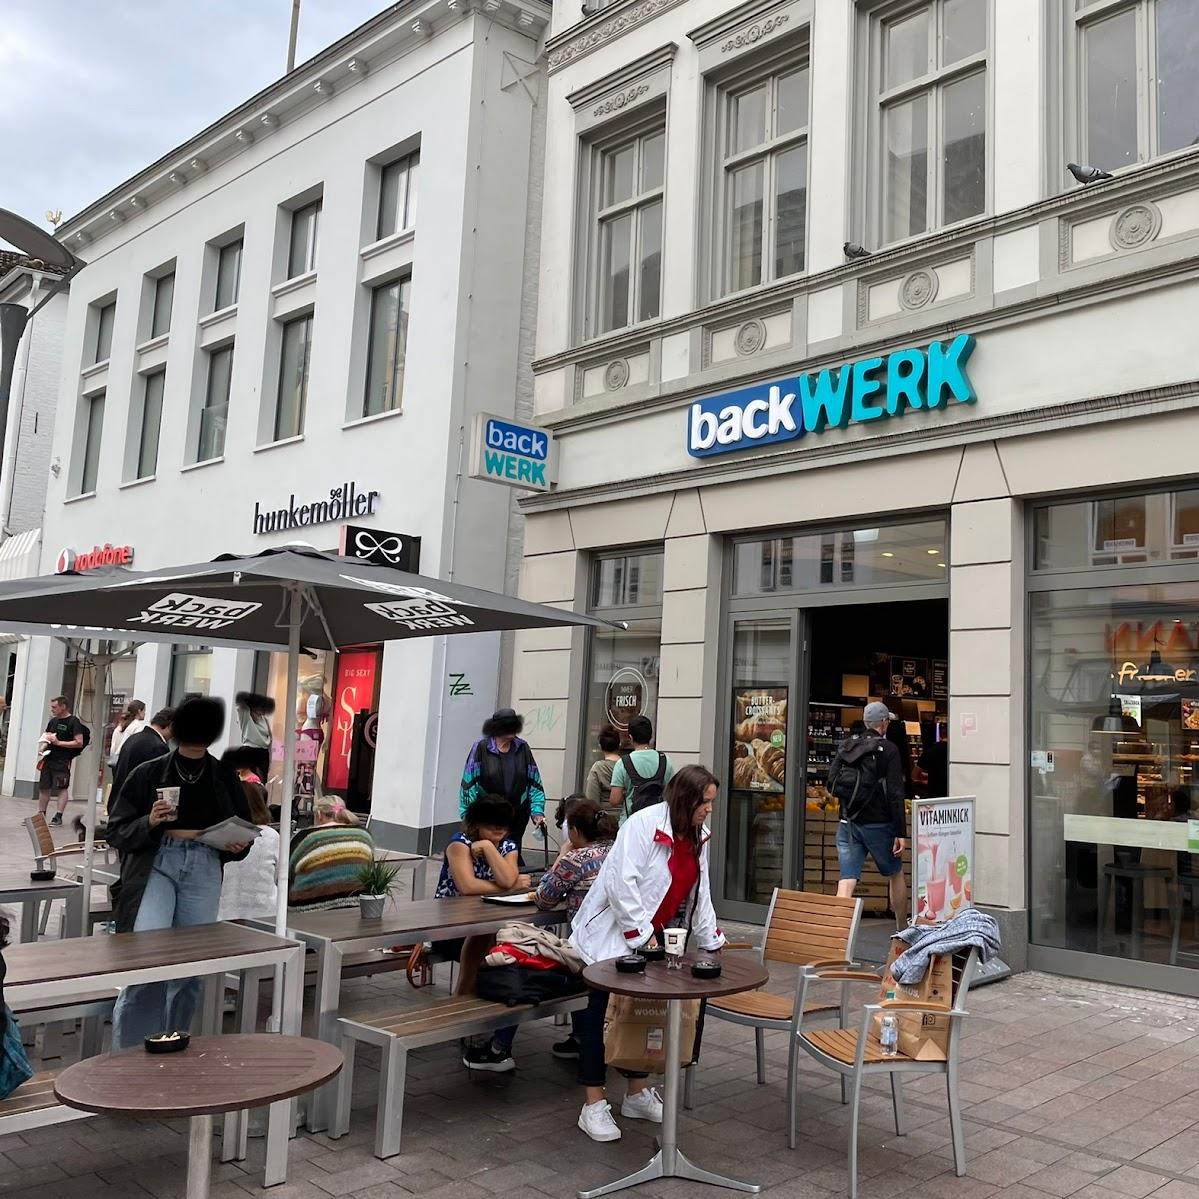 Restaurant "BackWerk" in Flensburg